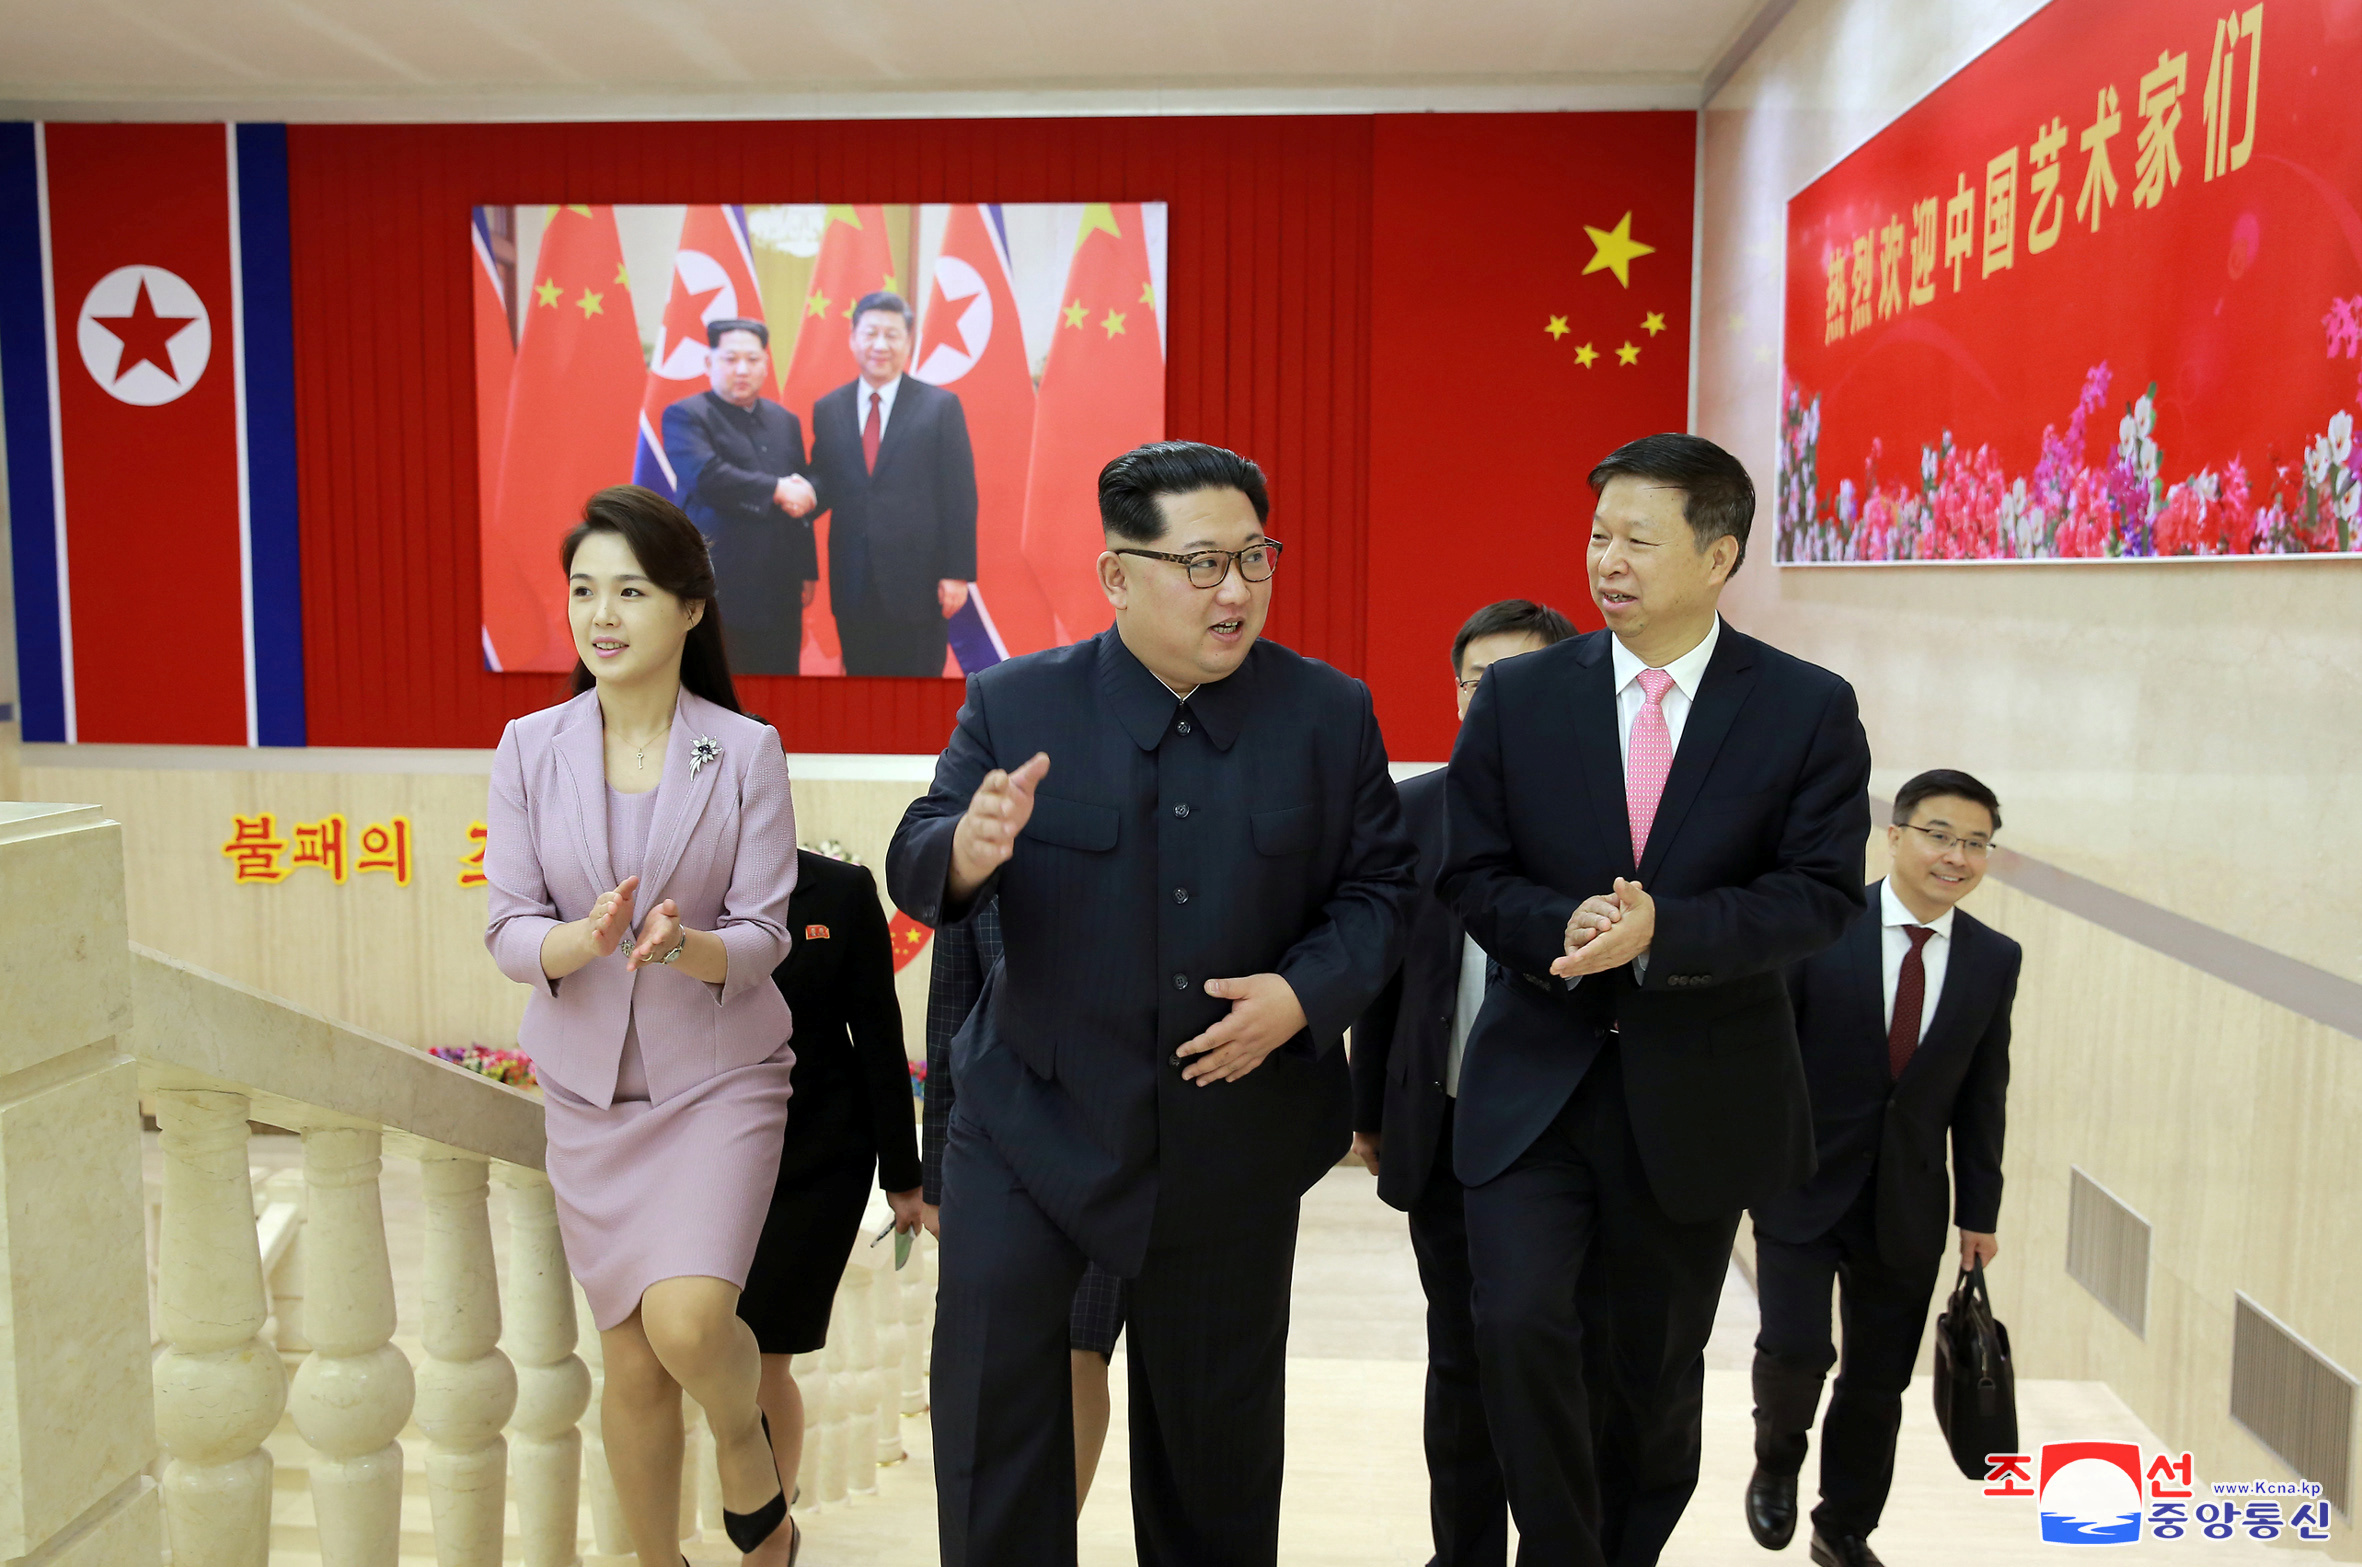 1118471-زعيم-كوريا-الشمالية-يلتقى-مسئول-بالحزب-الشيوعى-الصينى.JPG